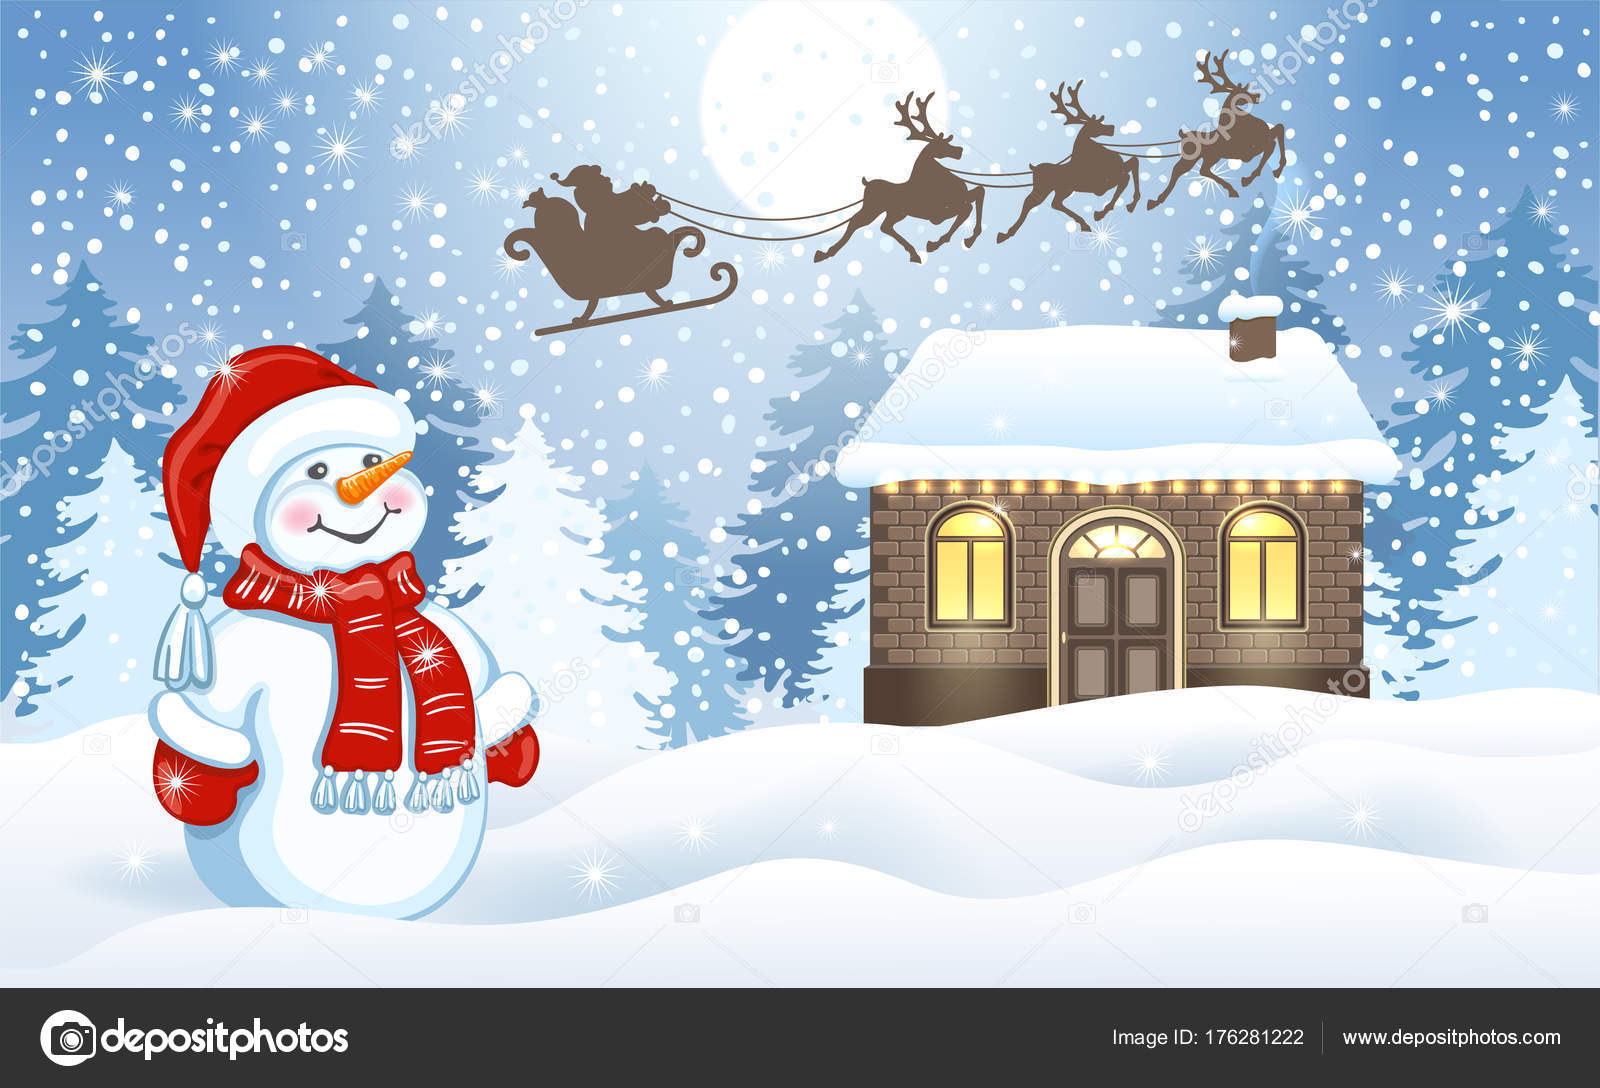 Thẻ Giáng Sinh vui vẻ với hình ảnh Tuyết Nhân đang làm việc tại xưởng của ông già Noel sẽ mang đến cho bạn những tràng cười tươi sáng và khoảnh khắc vui vẻ. Hãy xem ảnh liên quan để cùng hòa mình vào không khí lễ hội đầy ấm áp và niềm vui!